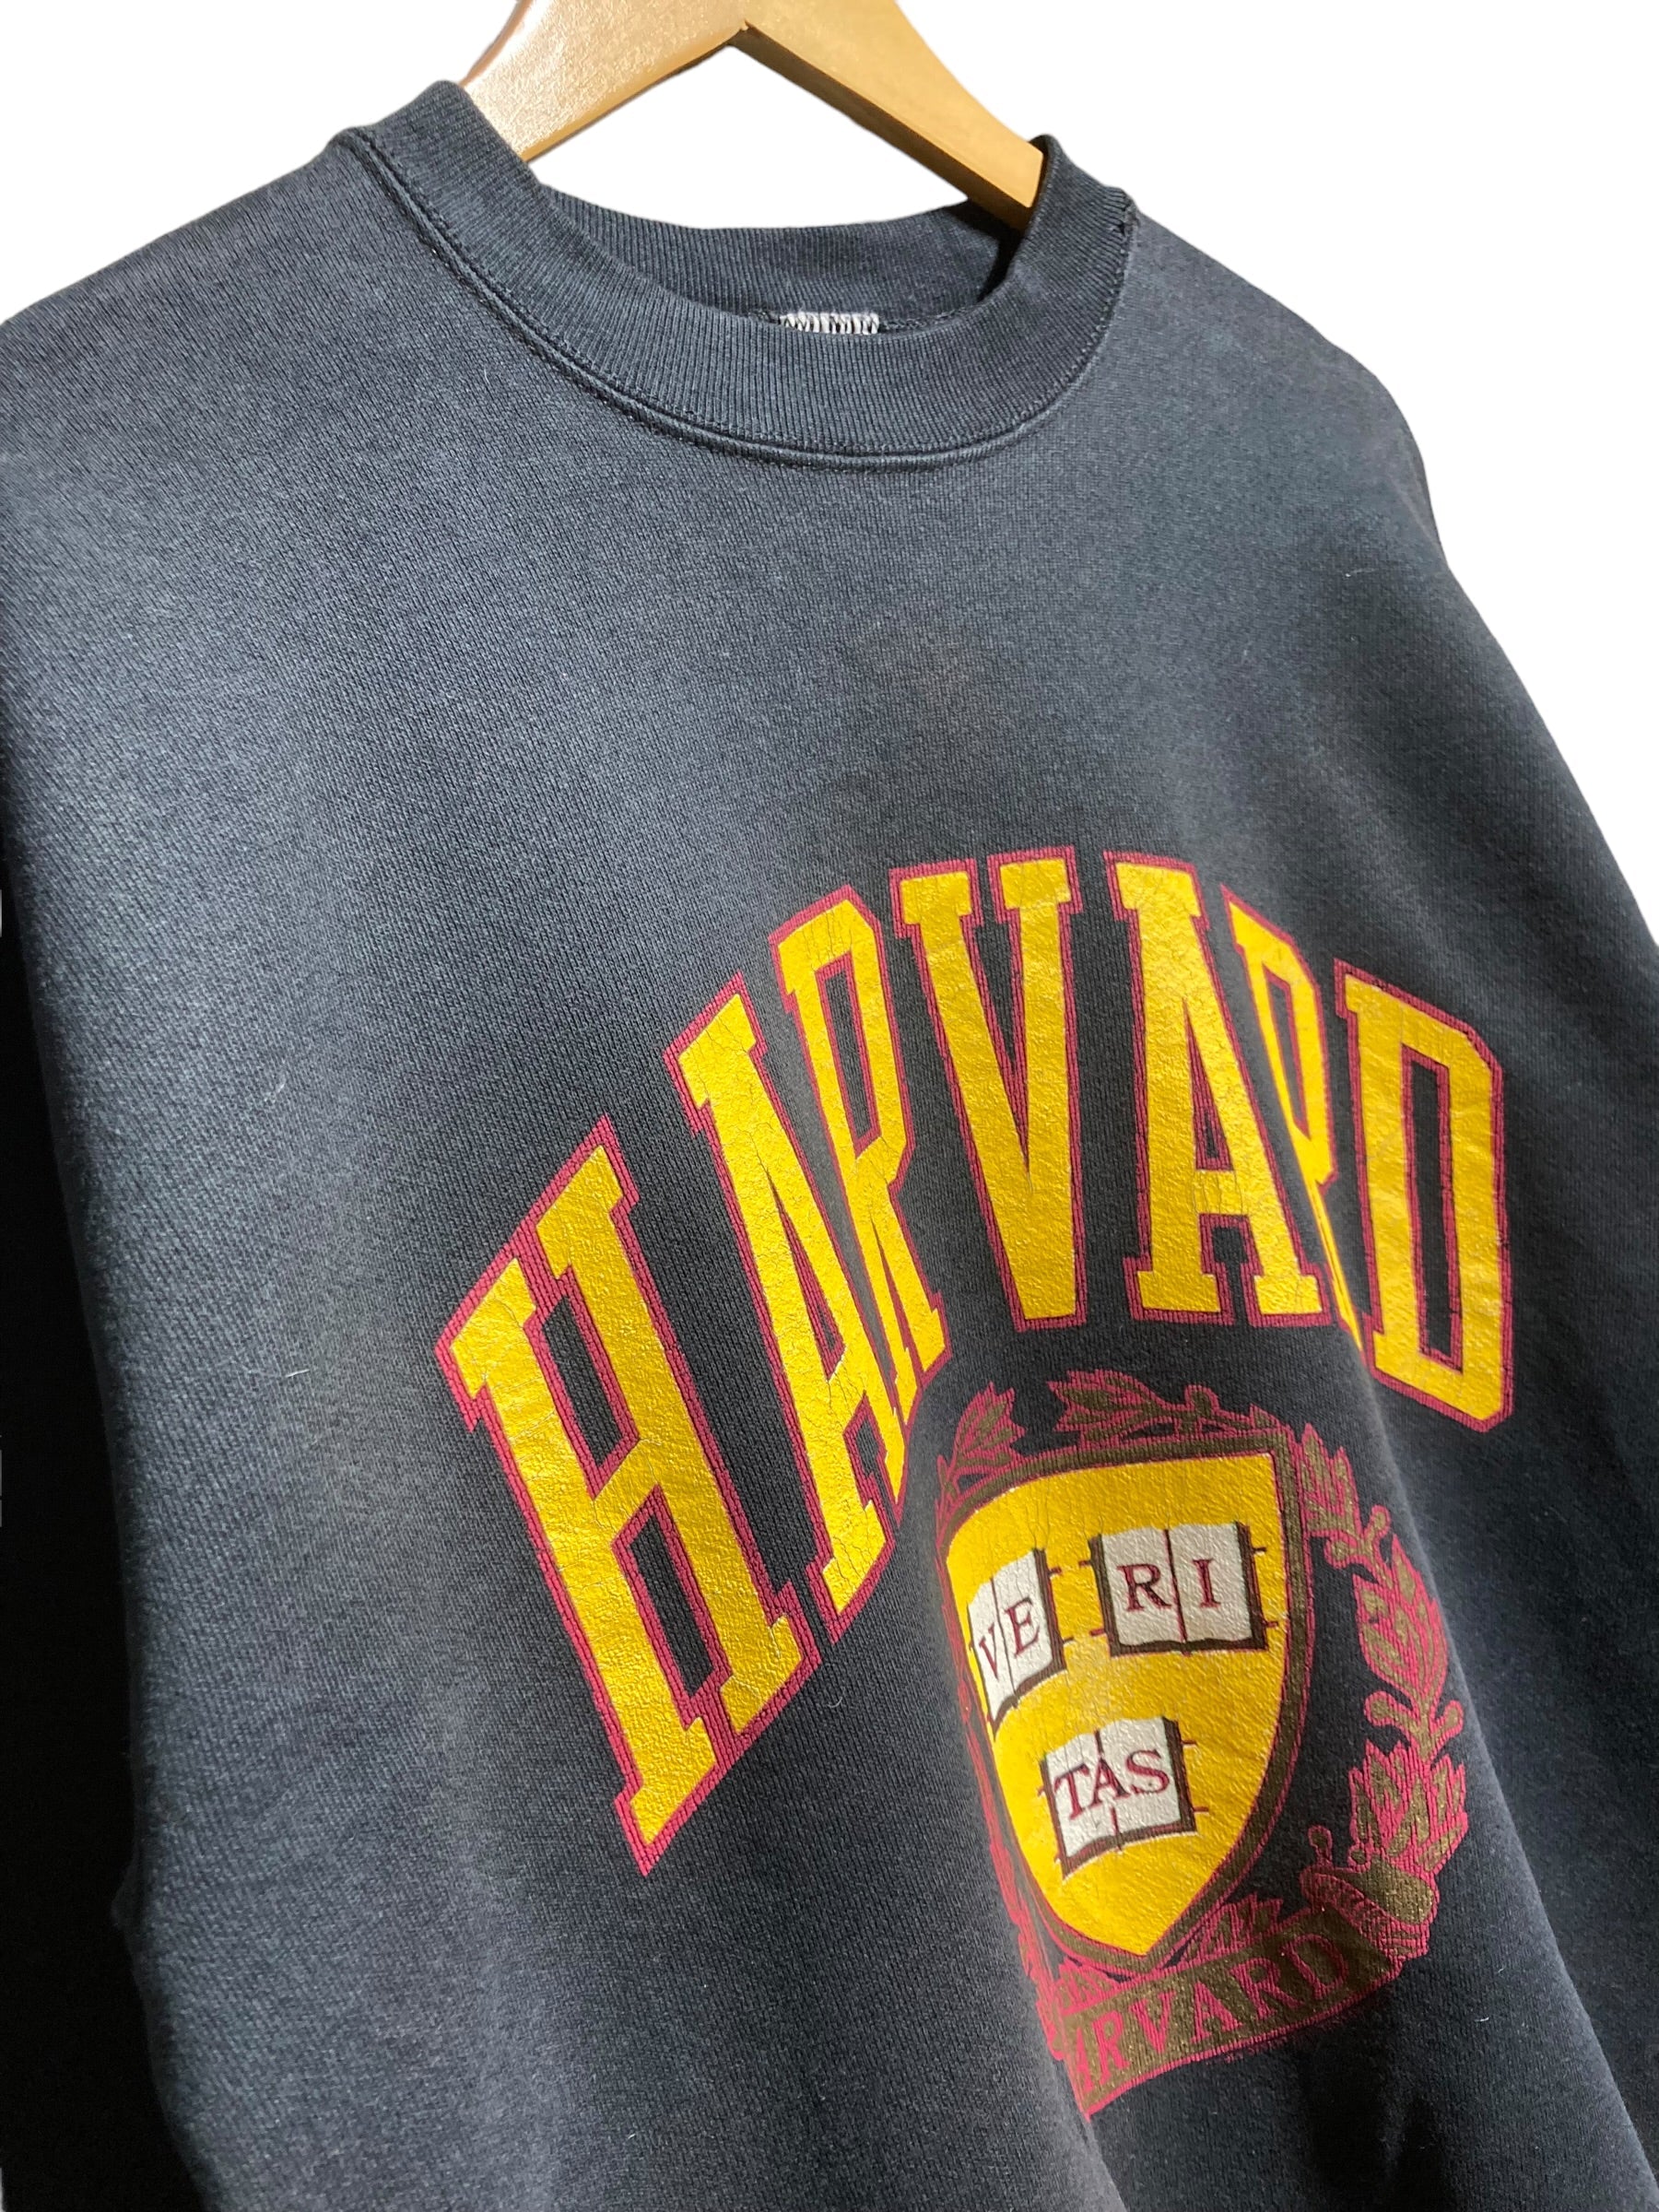 90s sweat HARVARD ハーバード大学 カレッジ デザインスウェット 